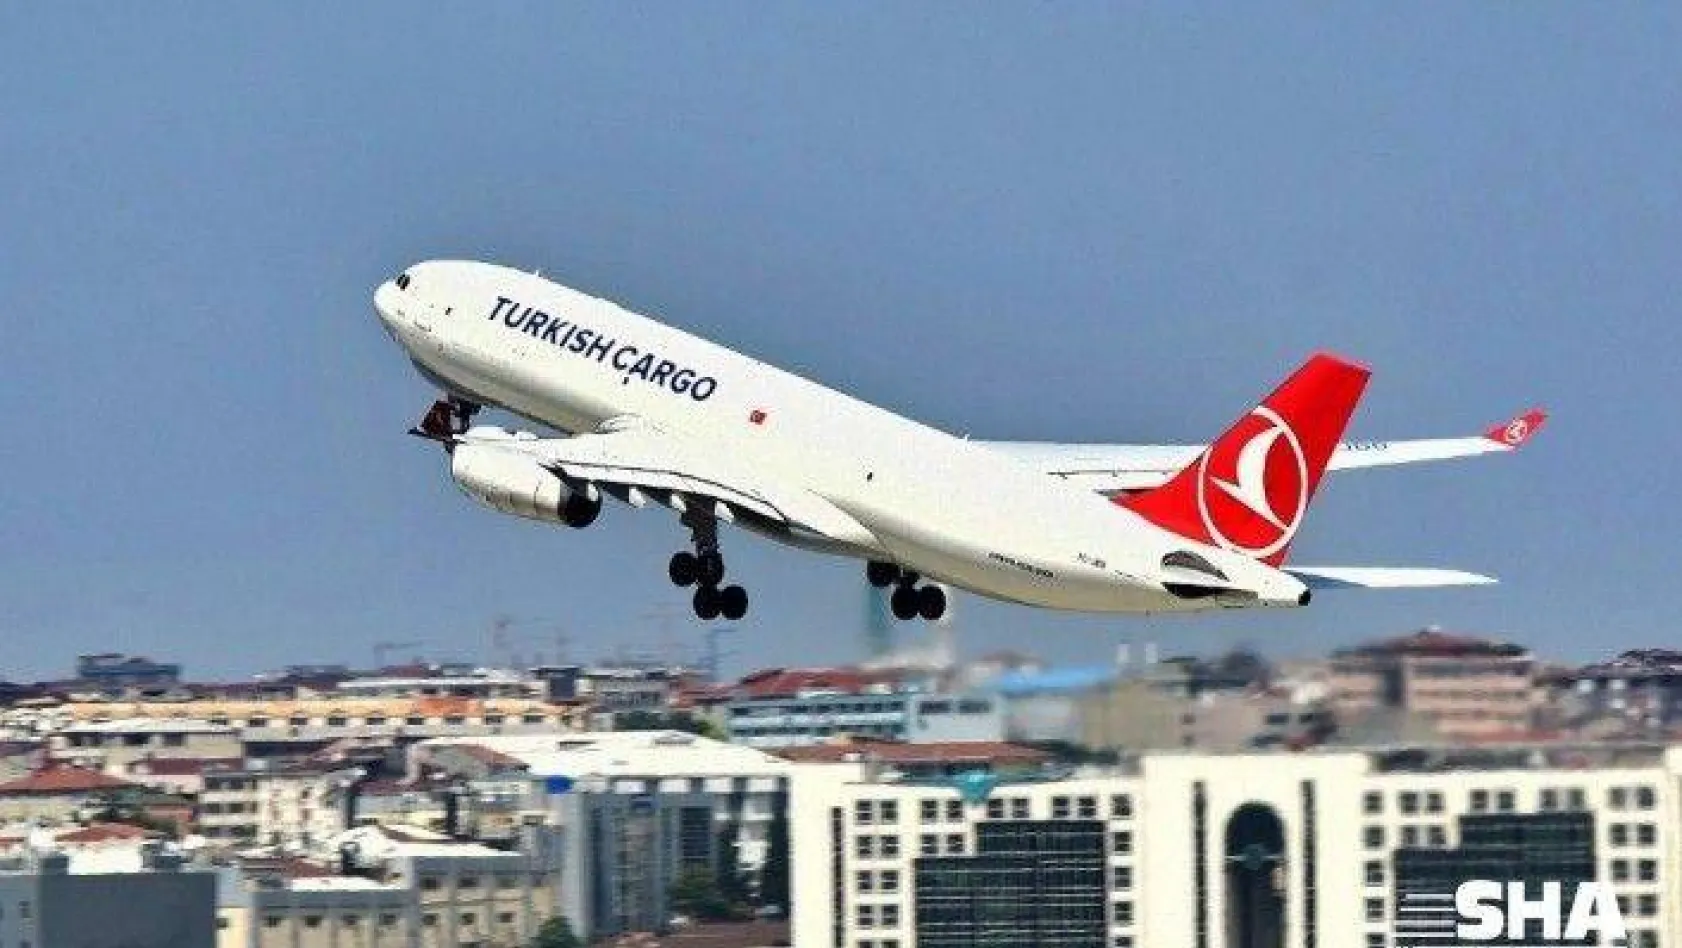 Dünyada taşınan her 20 hava kargodan 1'i Turkish Cargo ile yükseliyor